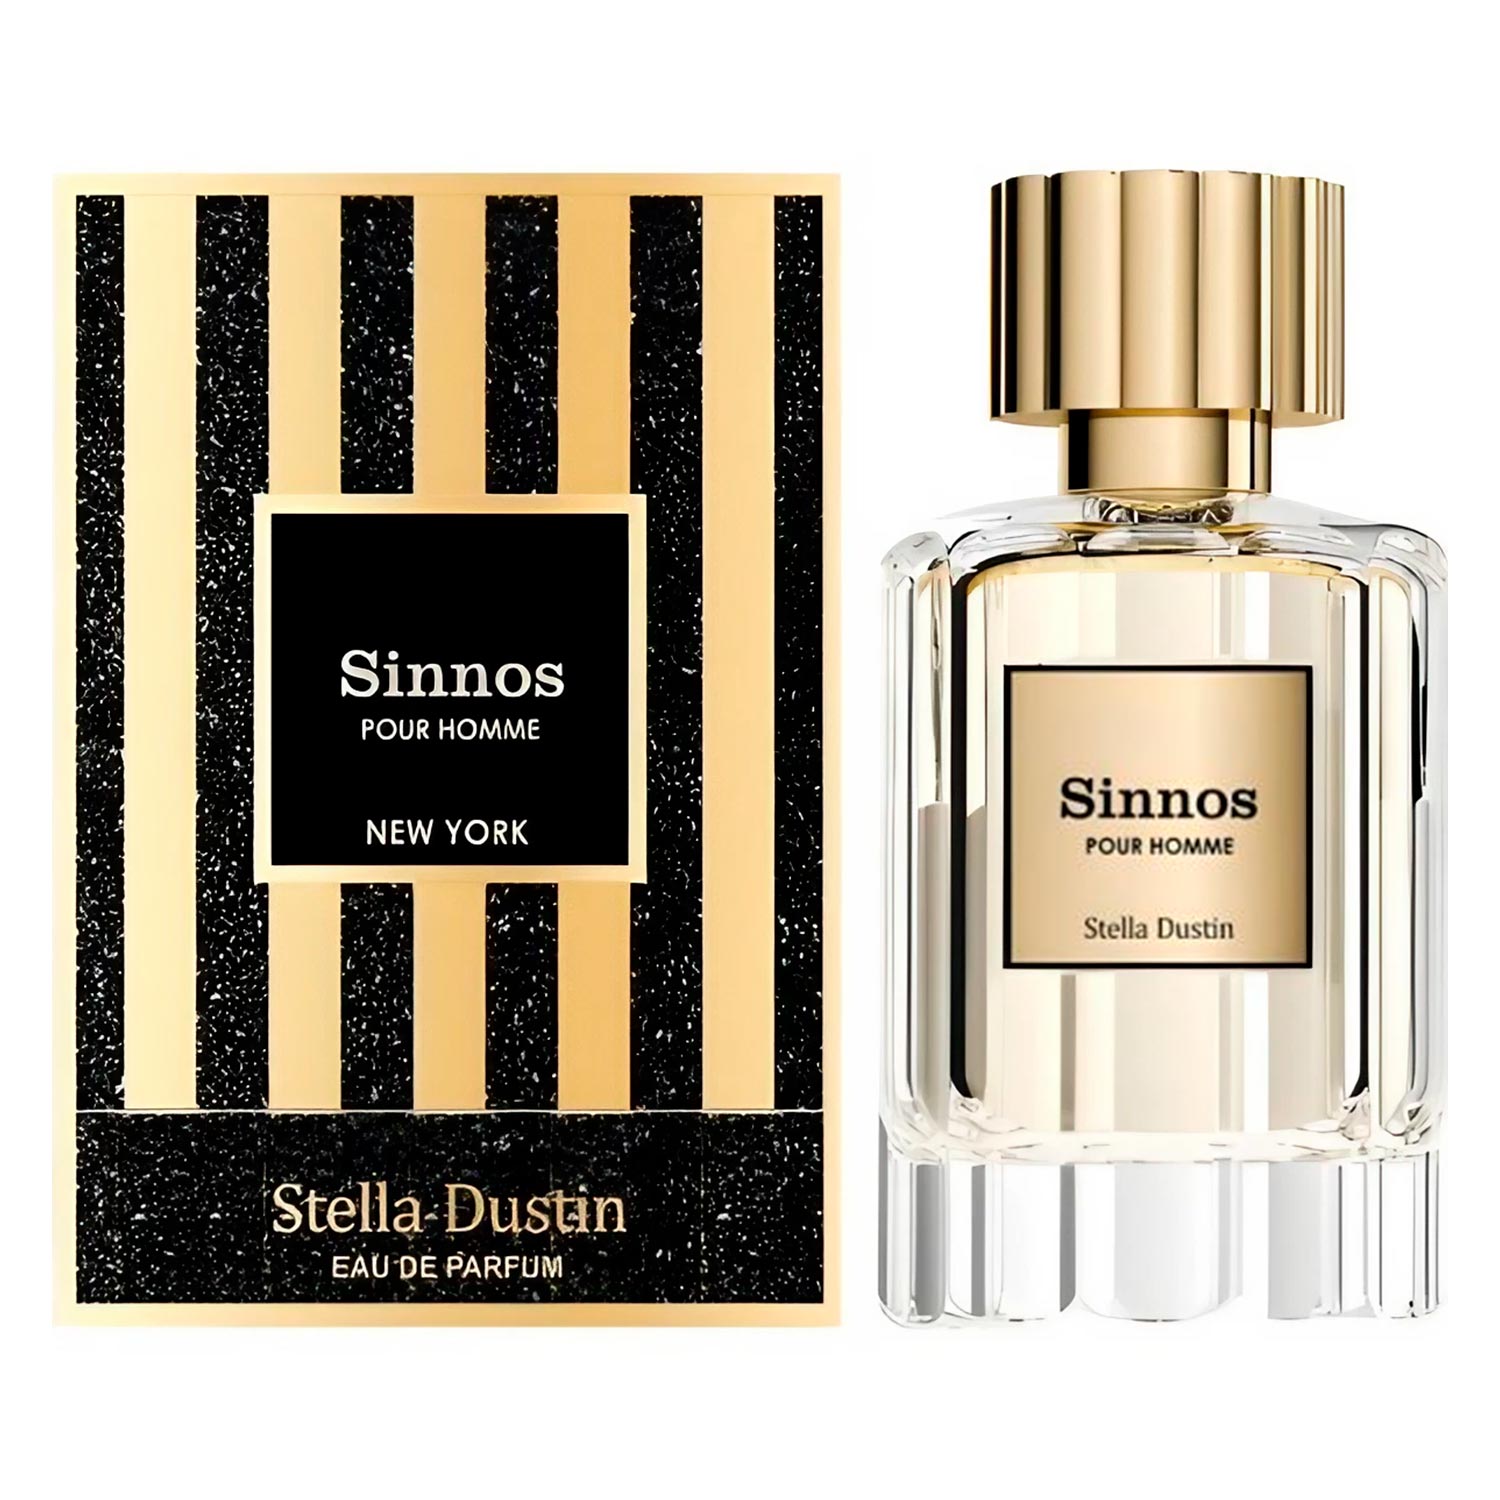 Perfume Stella Dustin Sinnos Pour Homme Eau de Parfum Masculino 100ml